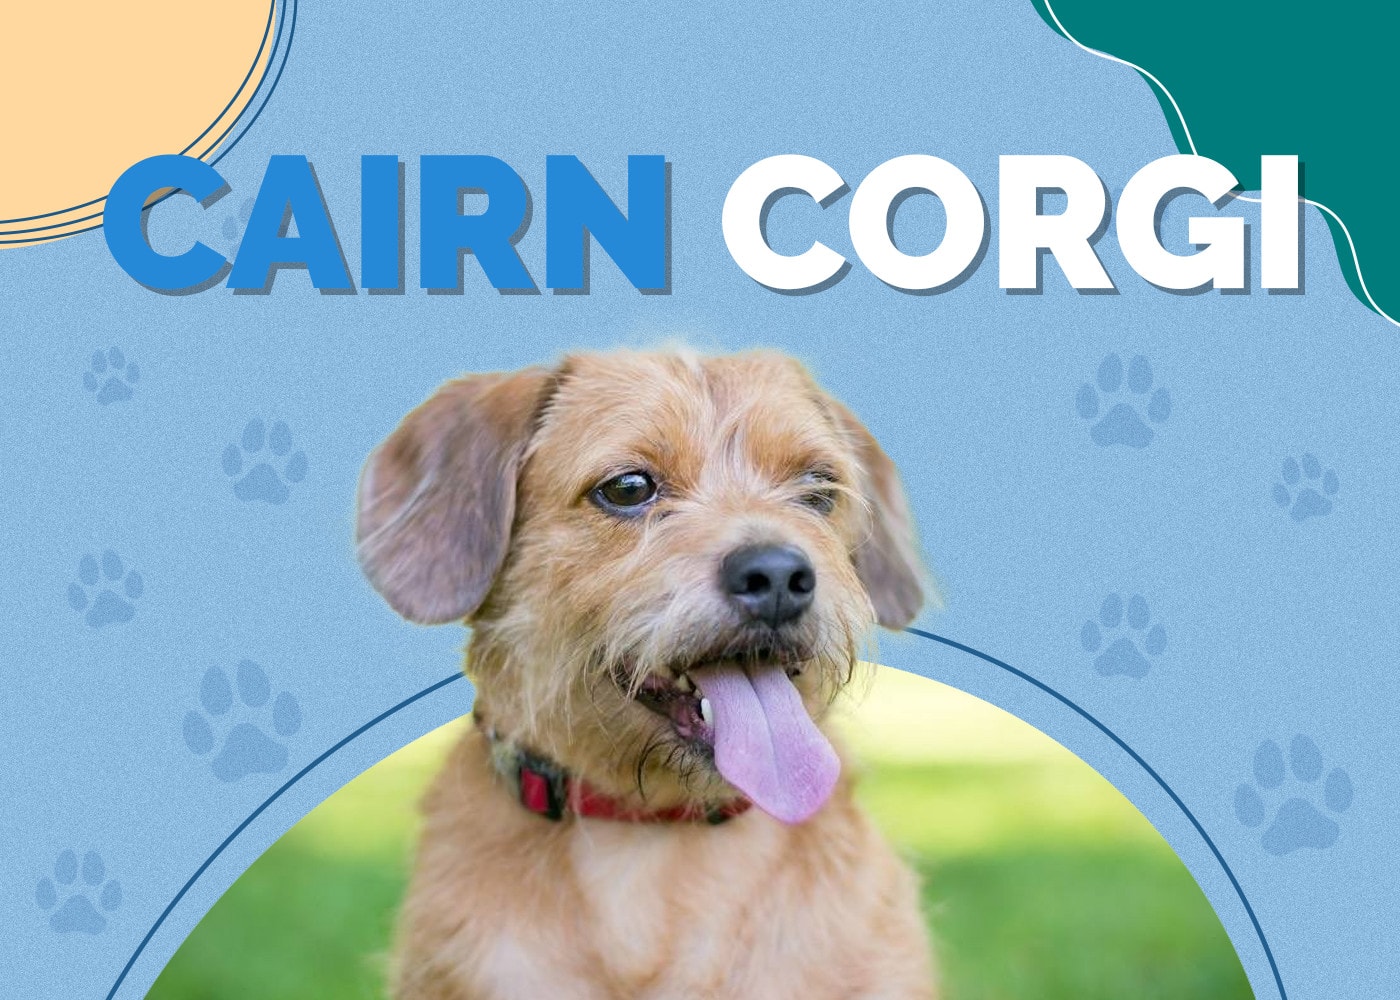 Cairn Corgi (Cairn Terrier & Welsh Corgi Mix)